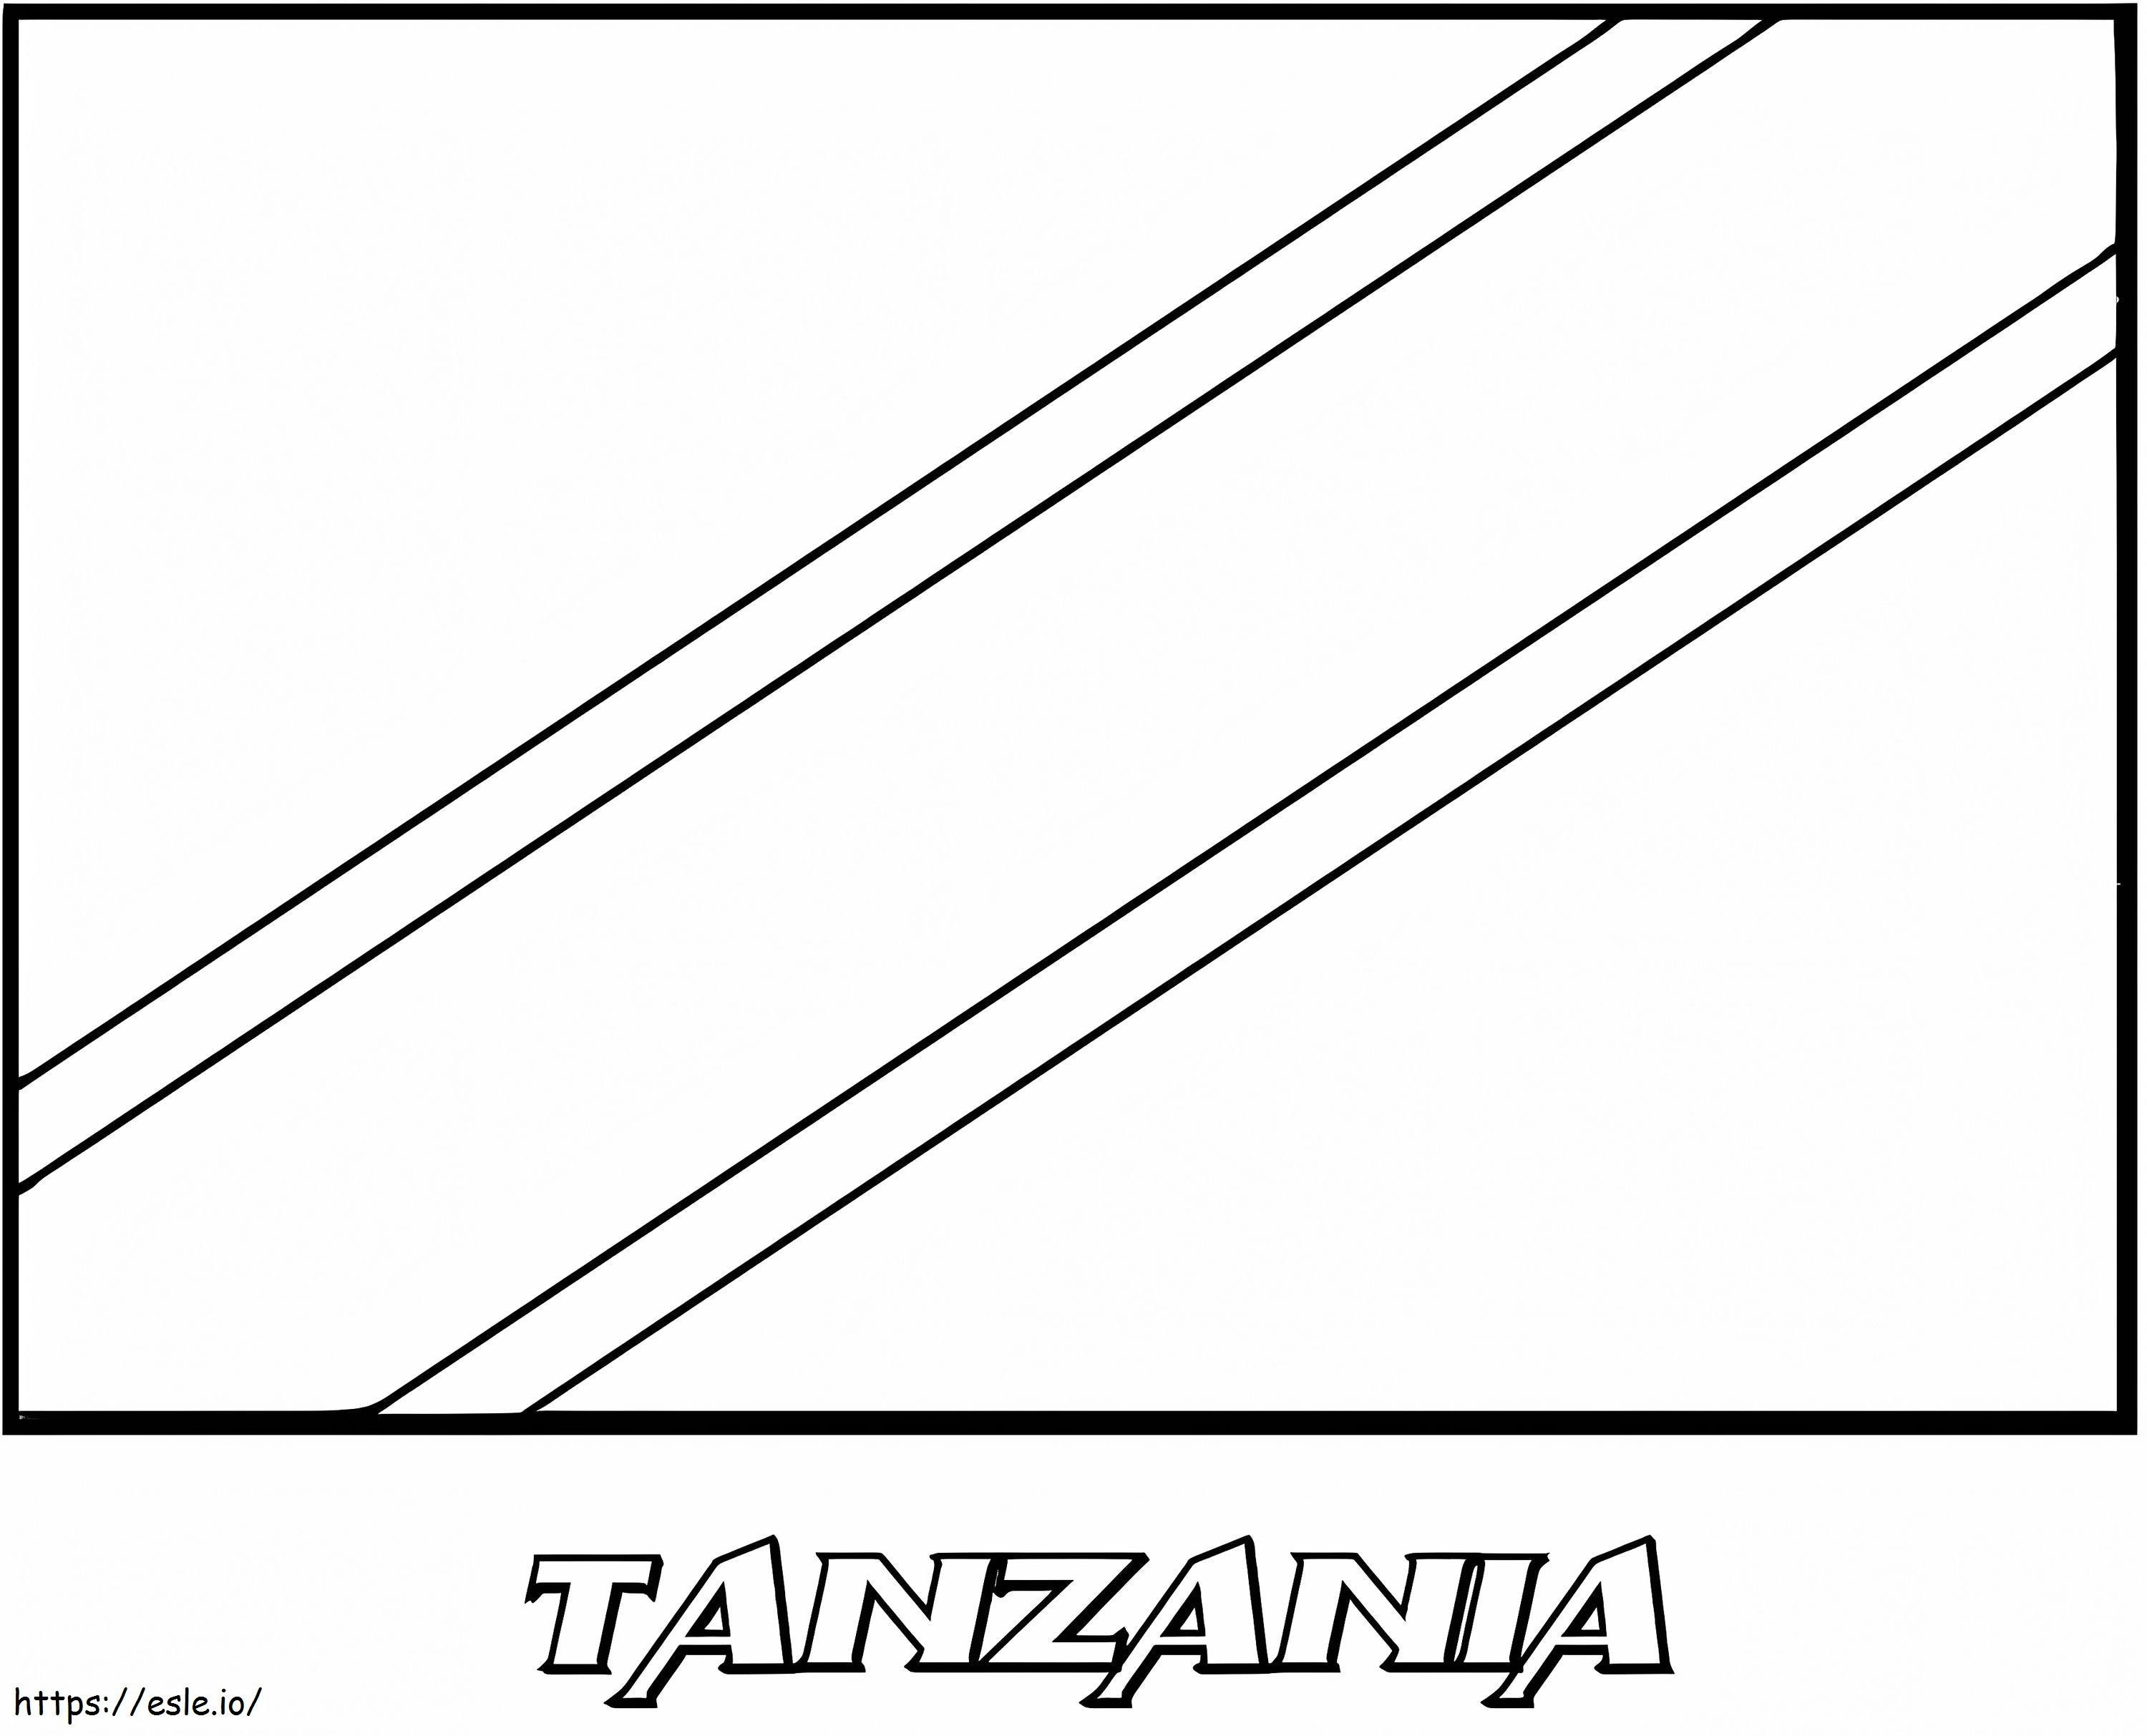 Steagul Tanzaniei de colorat